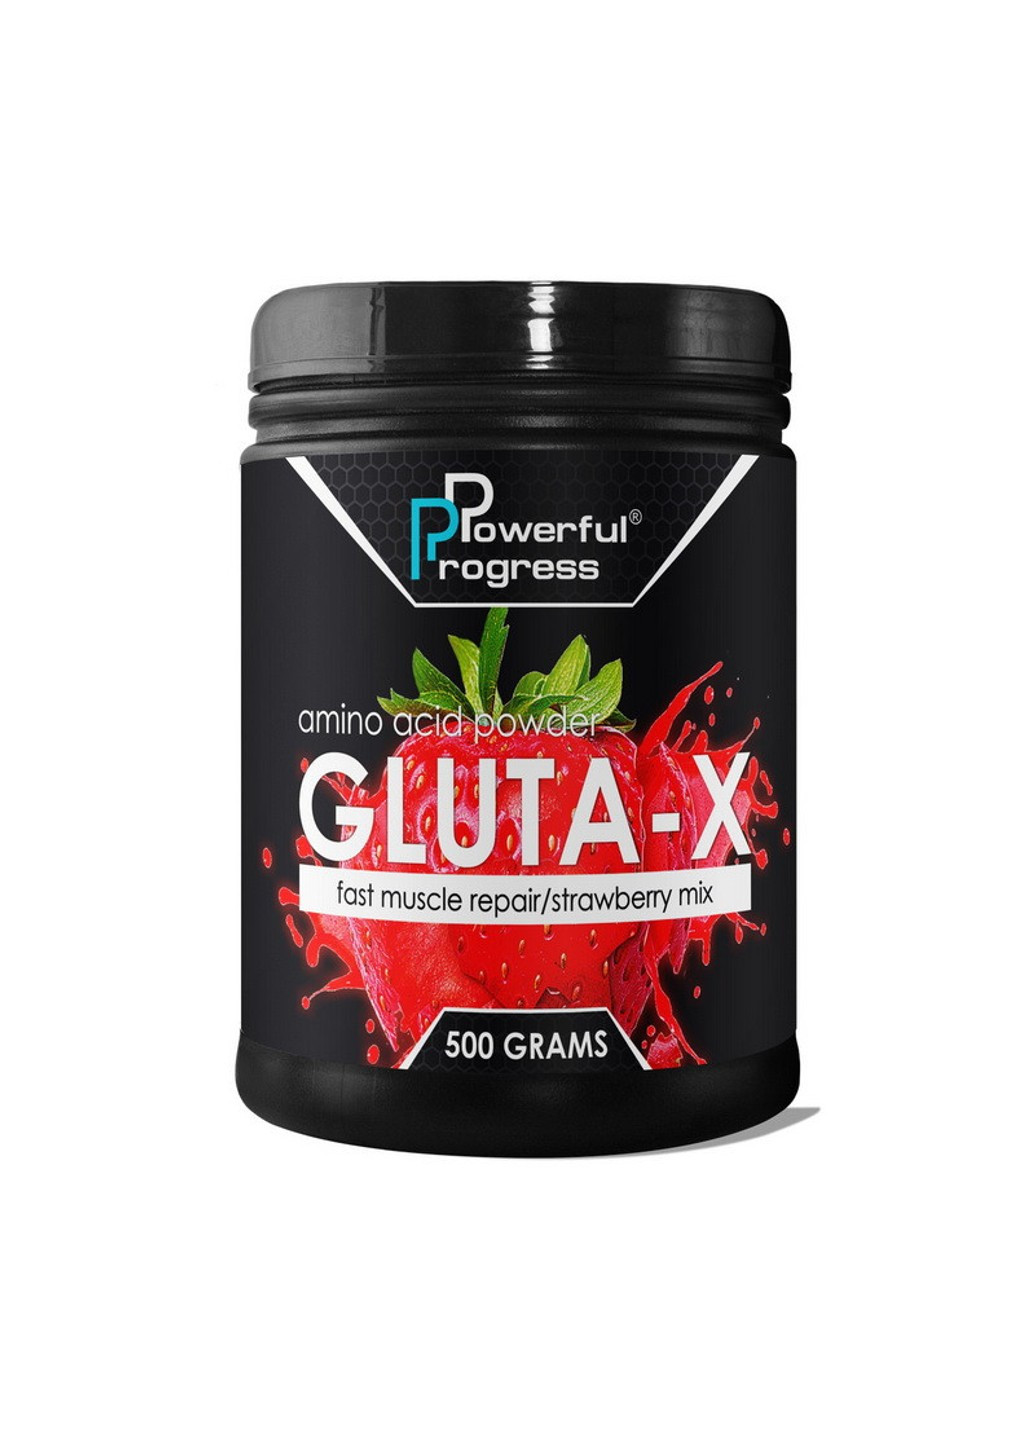 Глютамин Gluta-X (500 г) поверфул прогресс pineapple Powerful Progress (255362945)